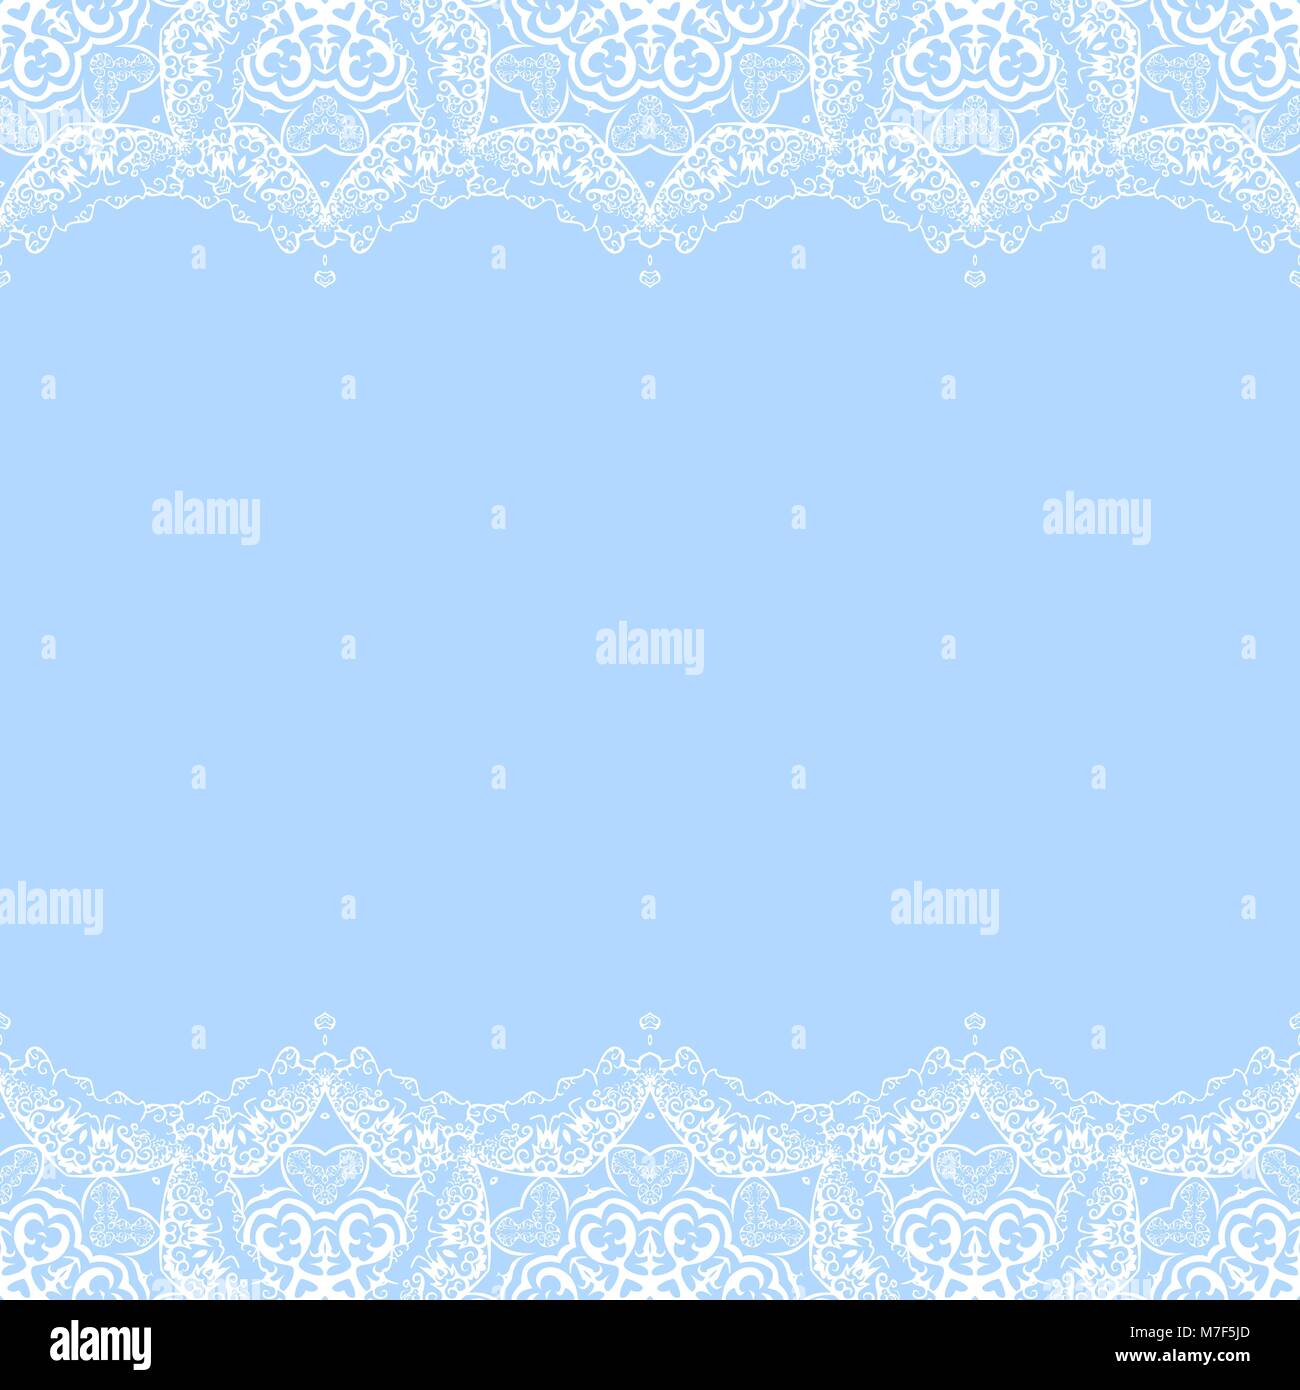 Vector bordure décorative de flocons blancs sur fond bleu. Carte d'invitation de souhaits pour Noël, Nouvel An Illustration de Vecteur